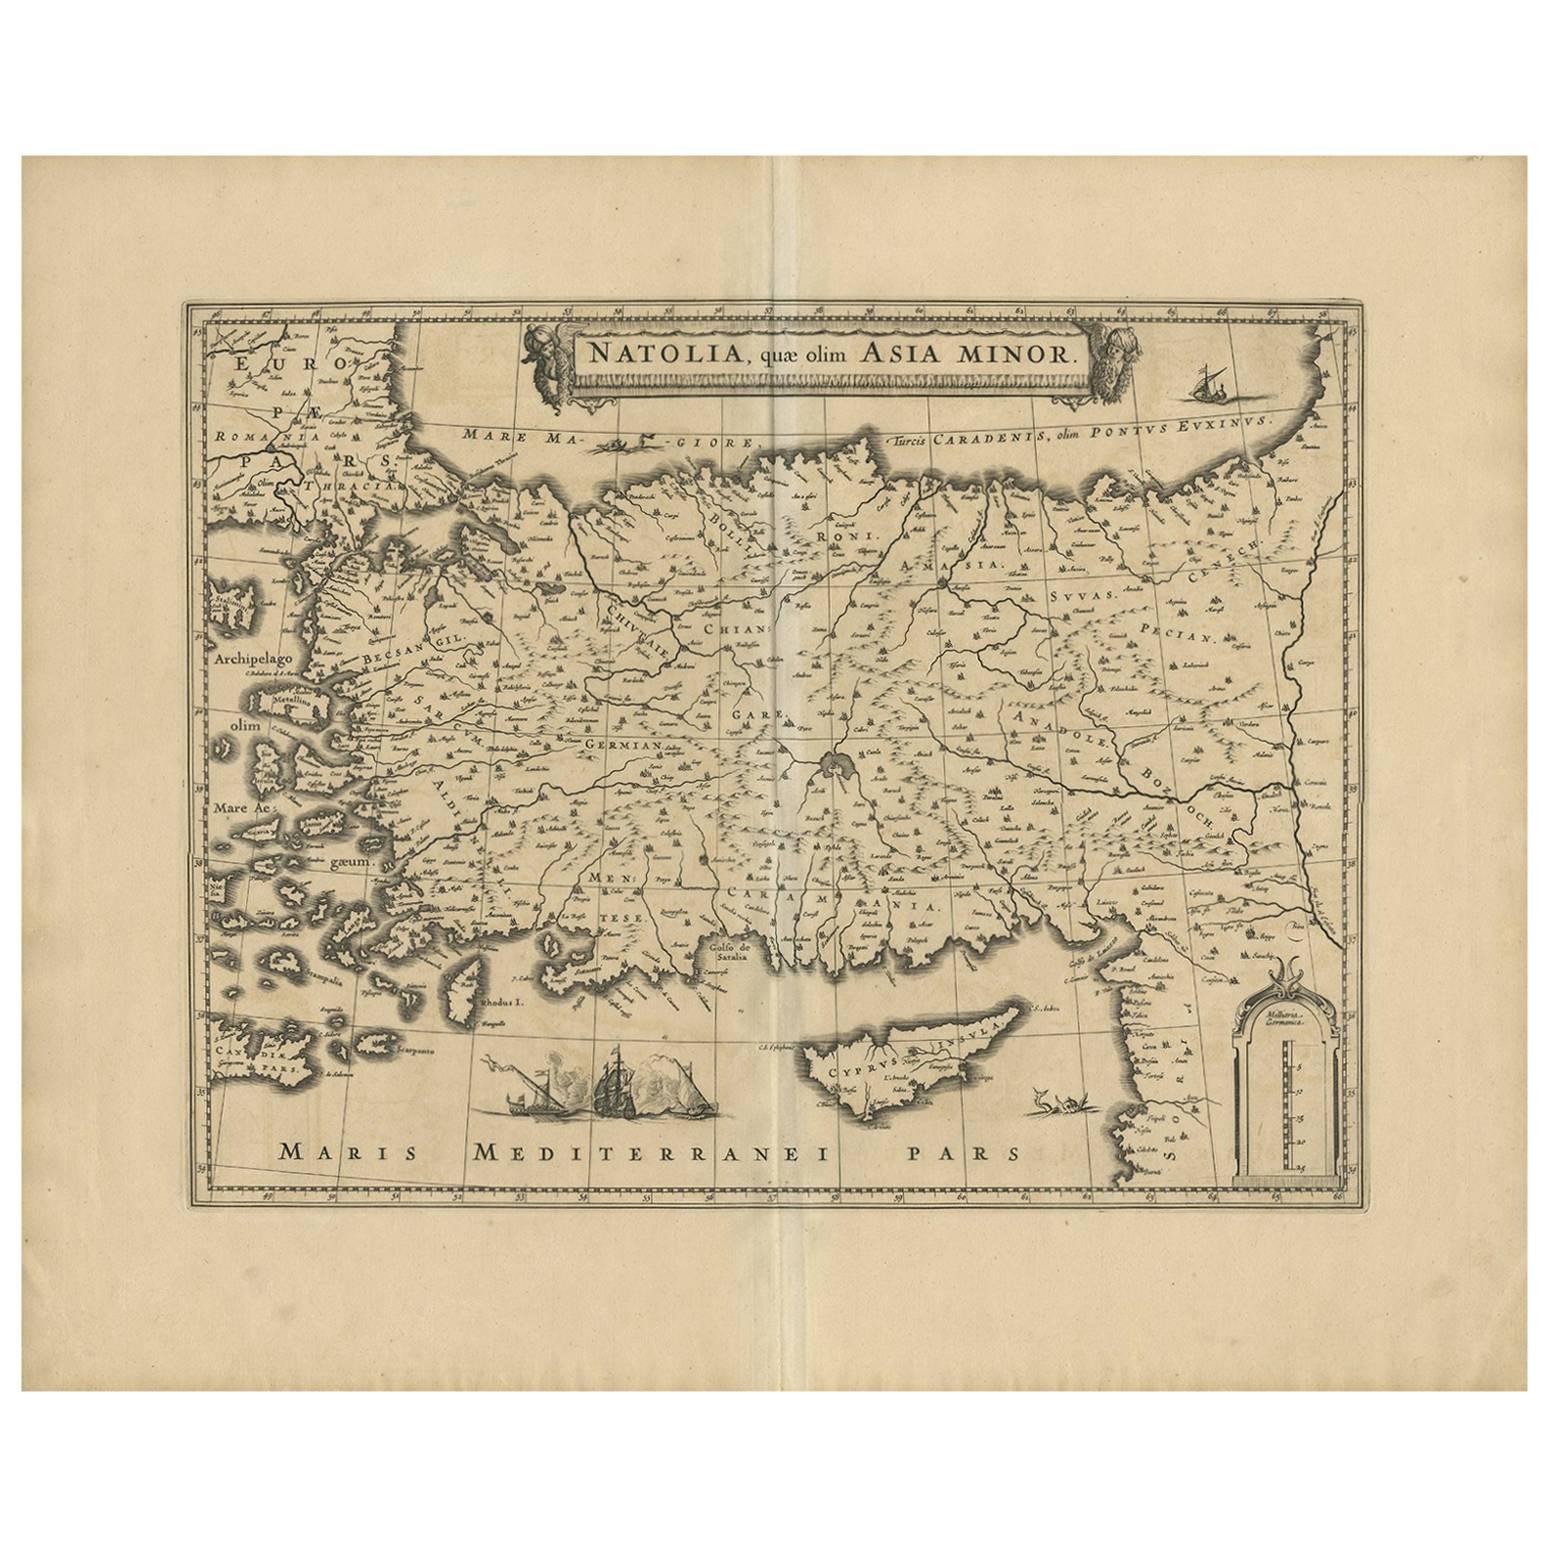 Kartographischer Wandteppich: Antike Karte von Kleinasien, um 1640